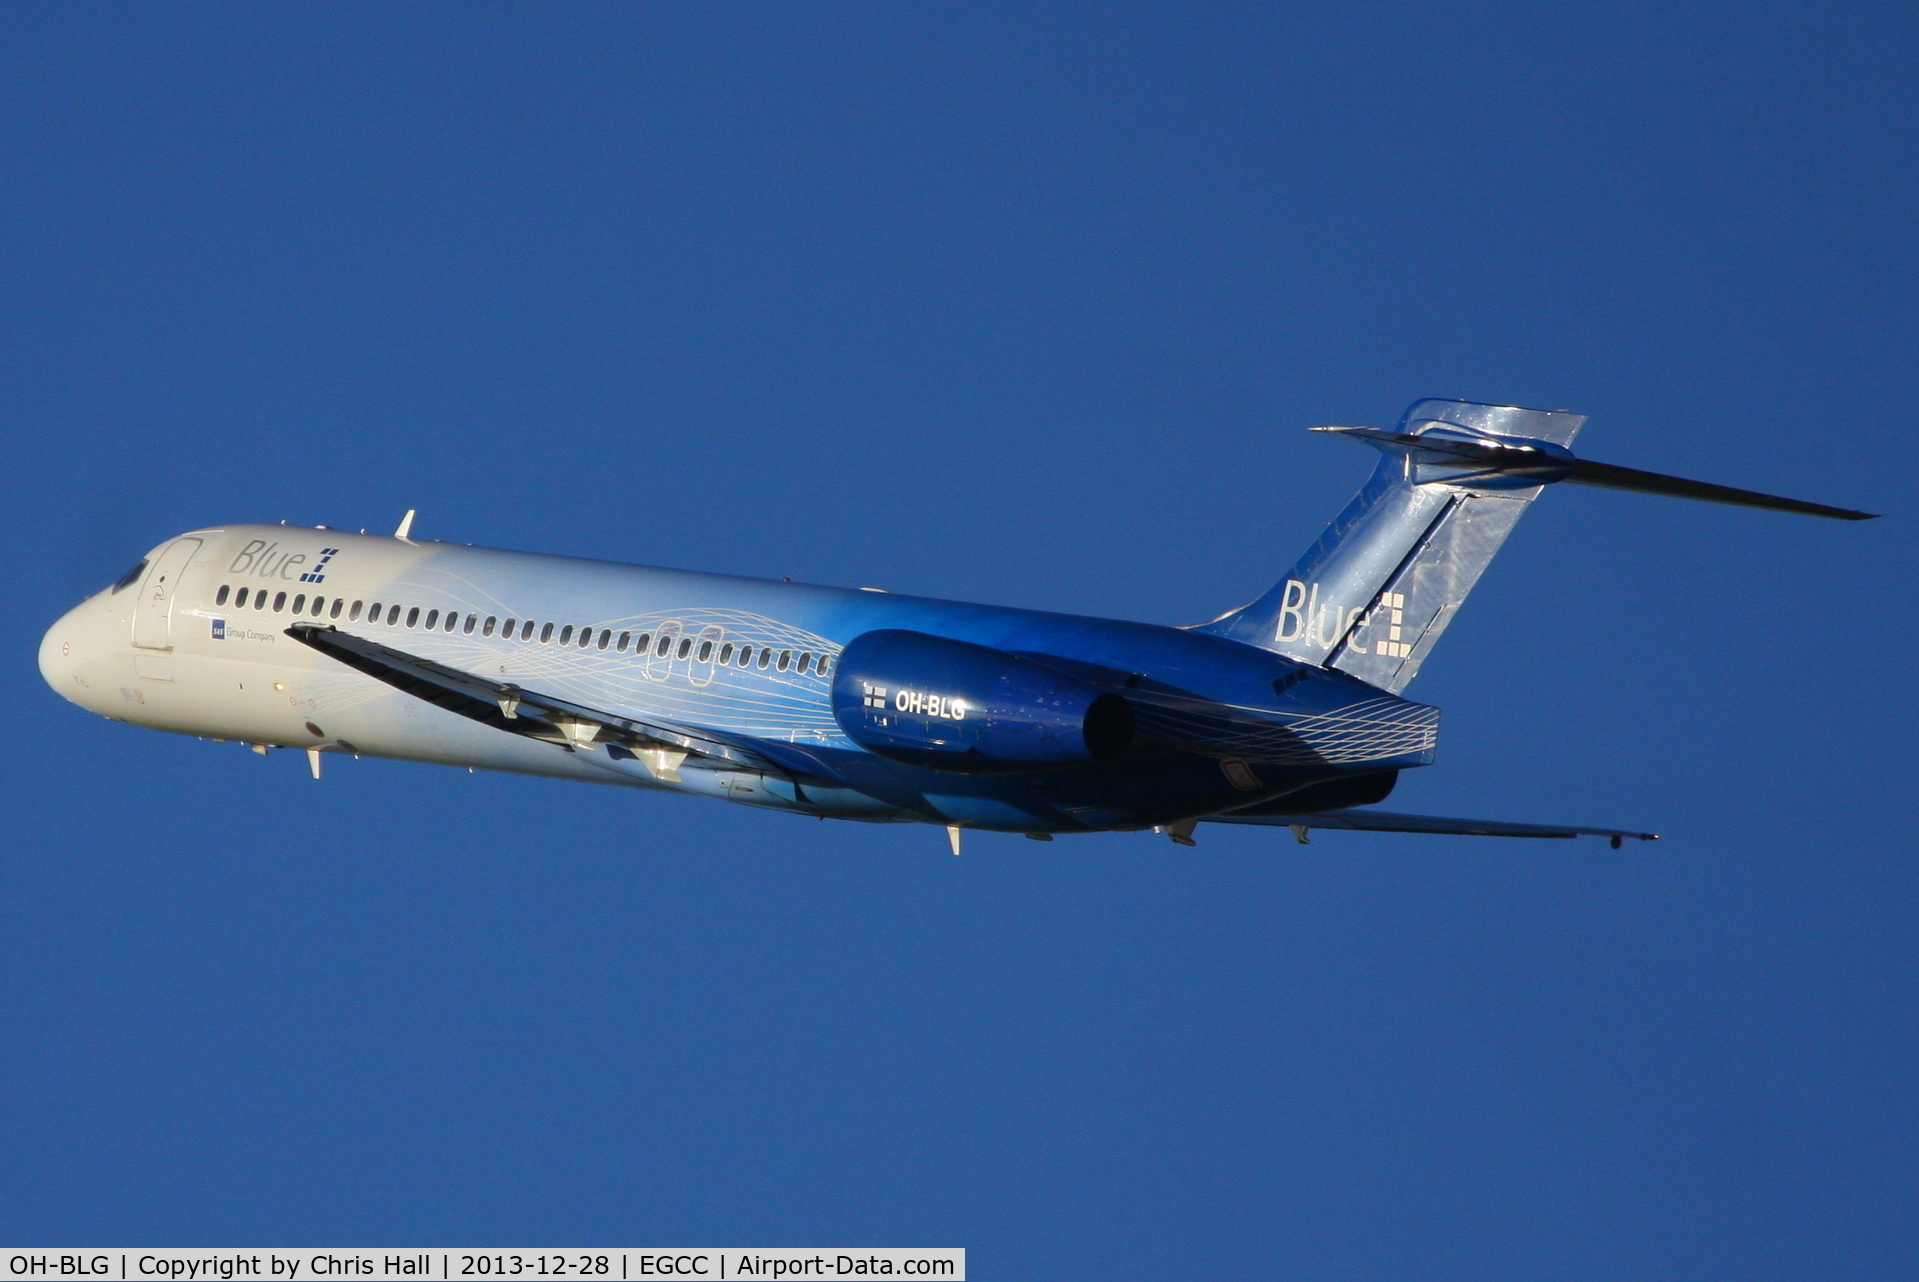 OH-BLG, 2000 Boeing 717-2CM C/N 55059, Blue1